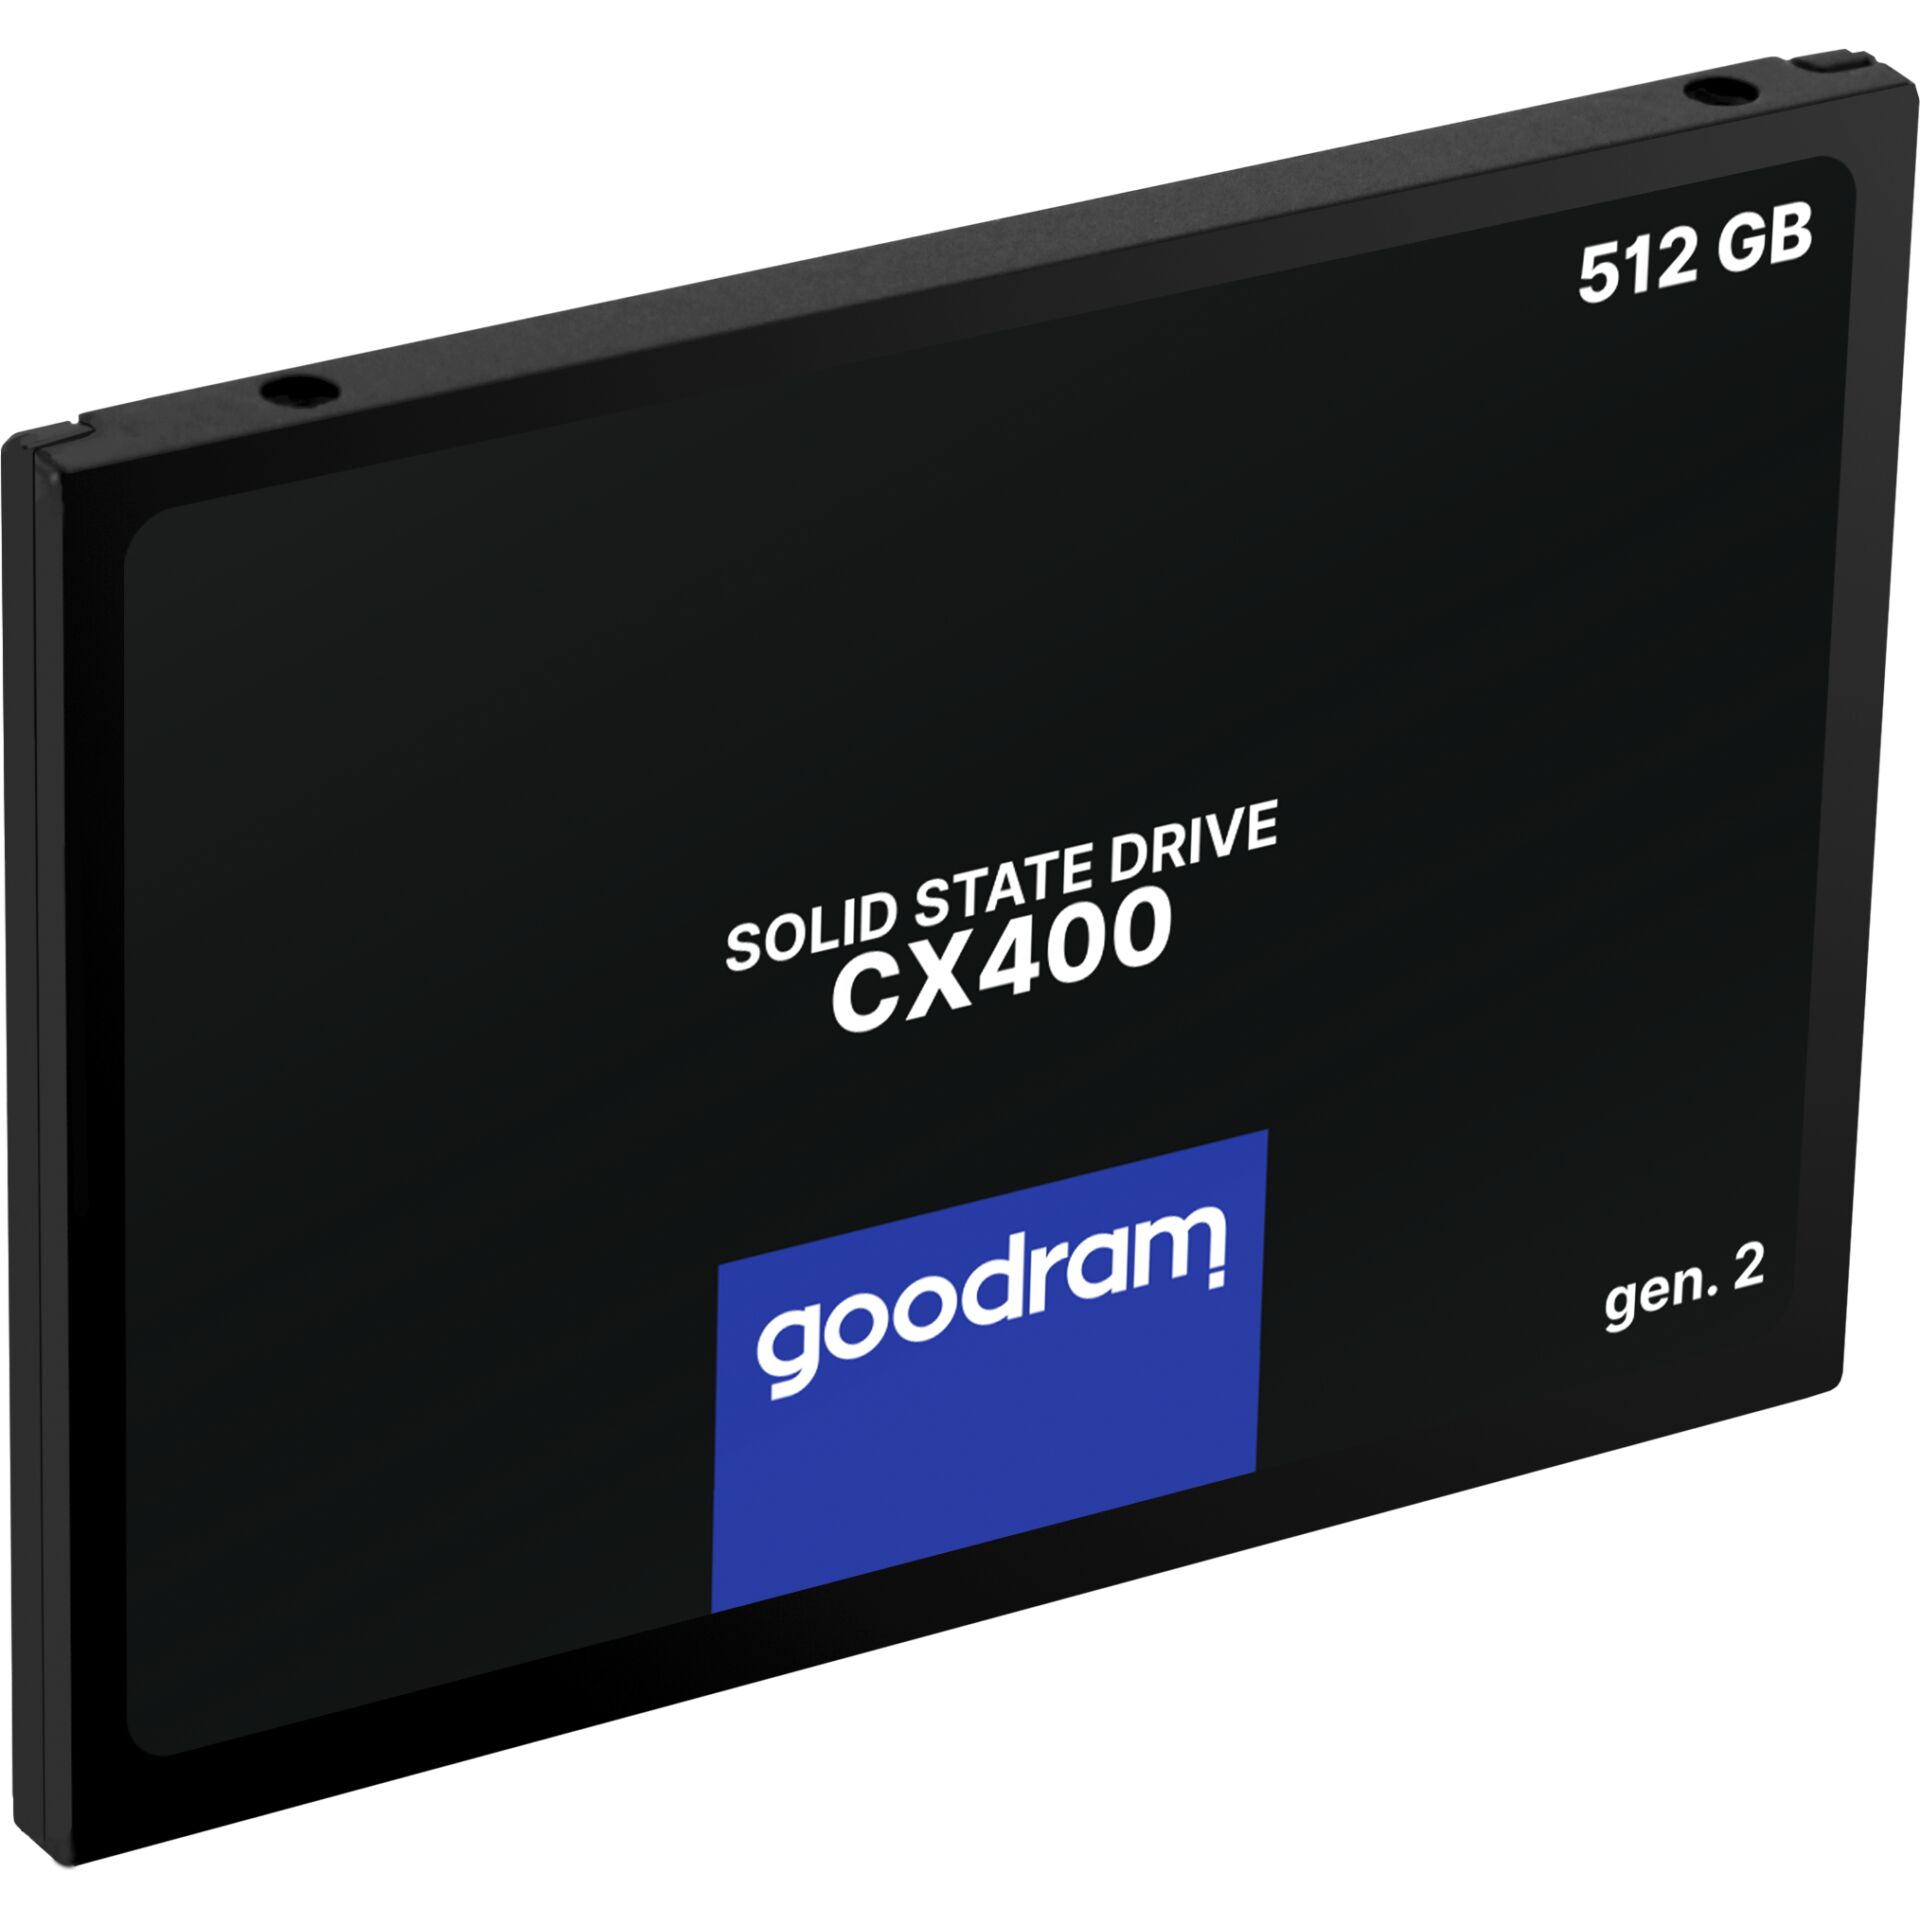 512 GB SSD Goodram CX400 Gen.2, SATA 6Gb/s, lesen: 550MB/s, schreiben: 500MB/s